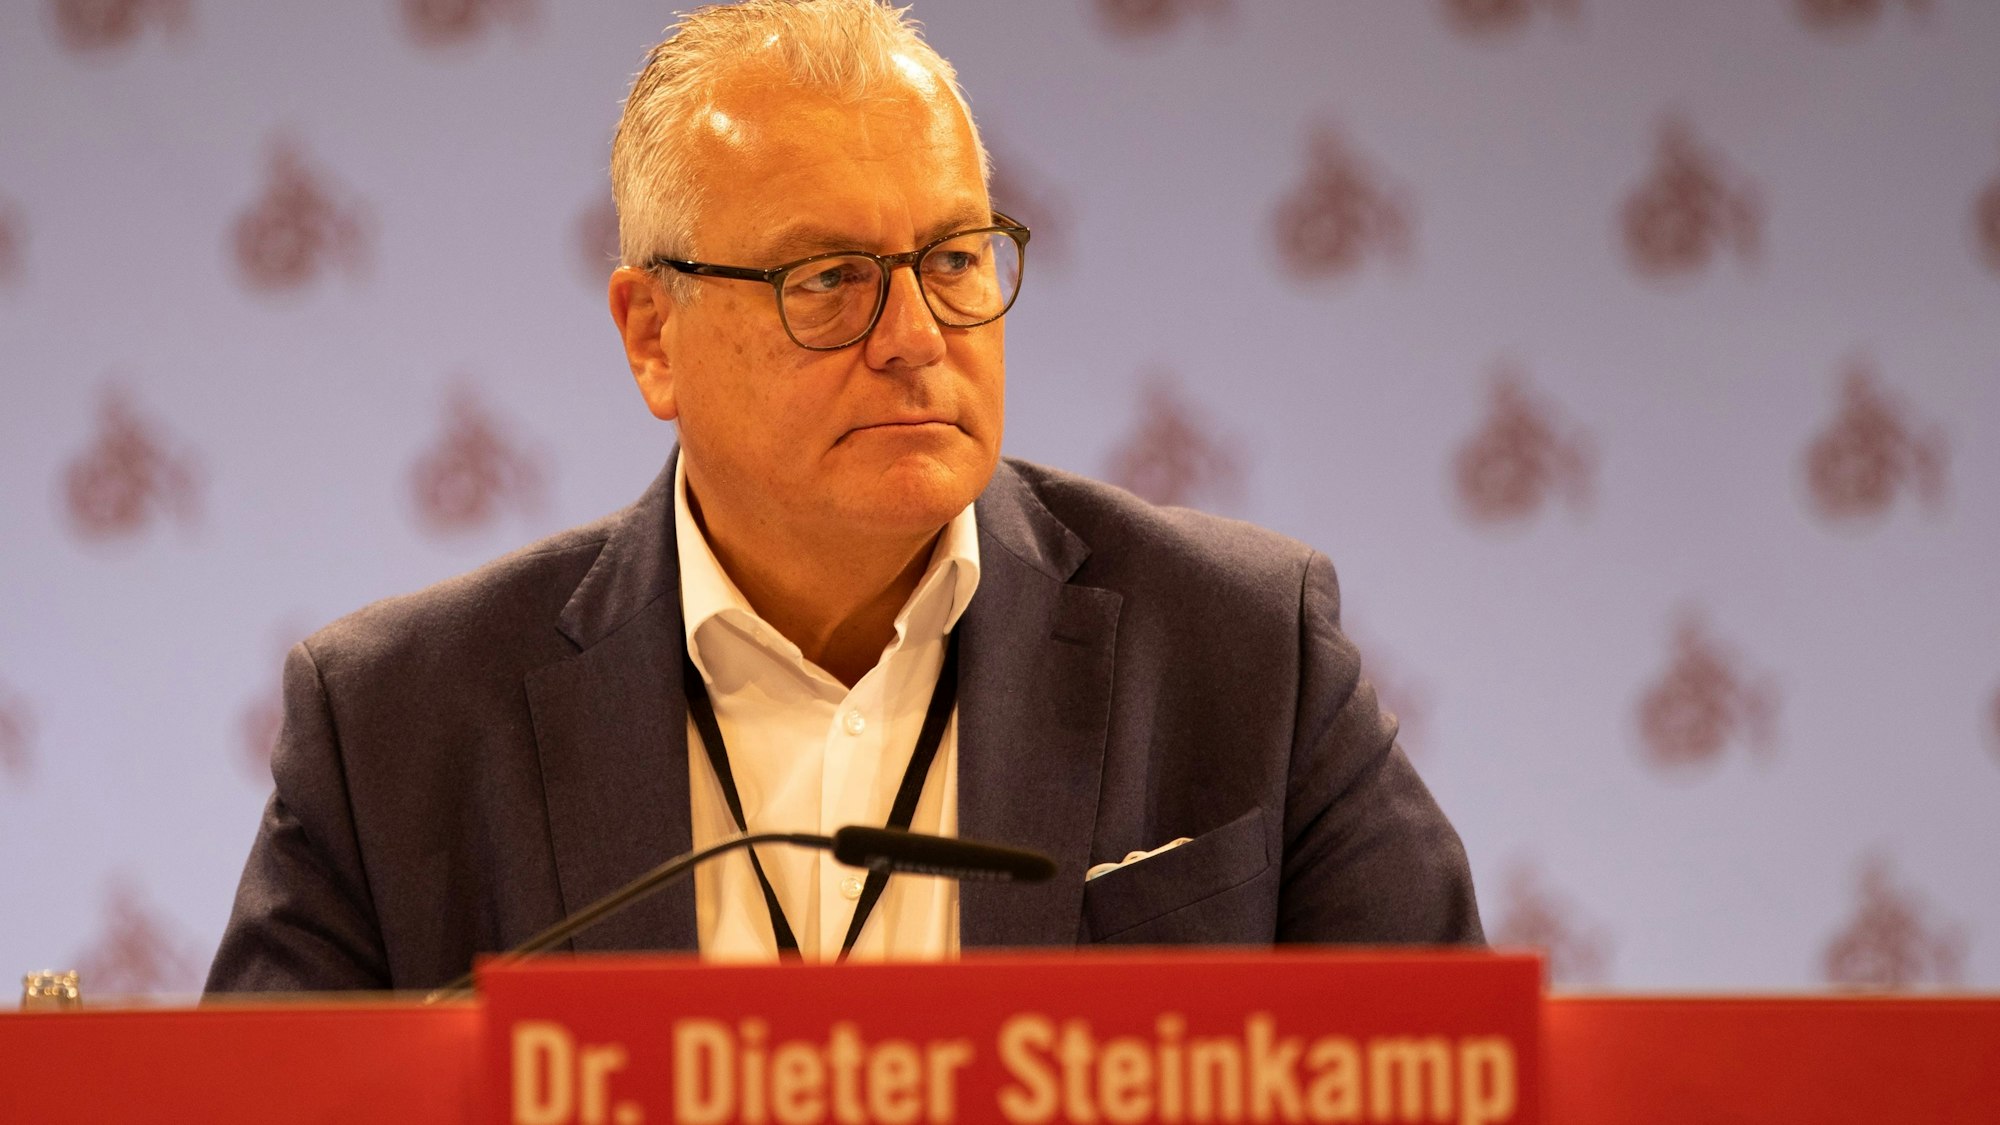 Dr. Dieter Steinkamp (Verammlungsleiter); Mitgliederverammlung des 1. FC Köln am 20.09.2022 in der Lanxess Arena in Köln (Deutschland).Foto: Andreas Dick